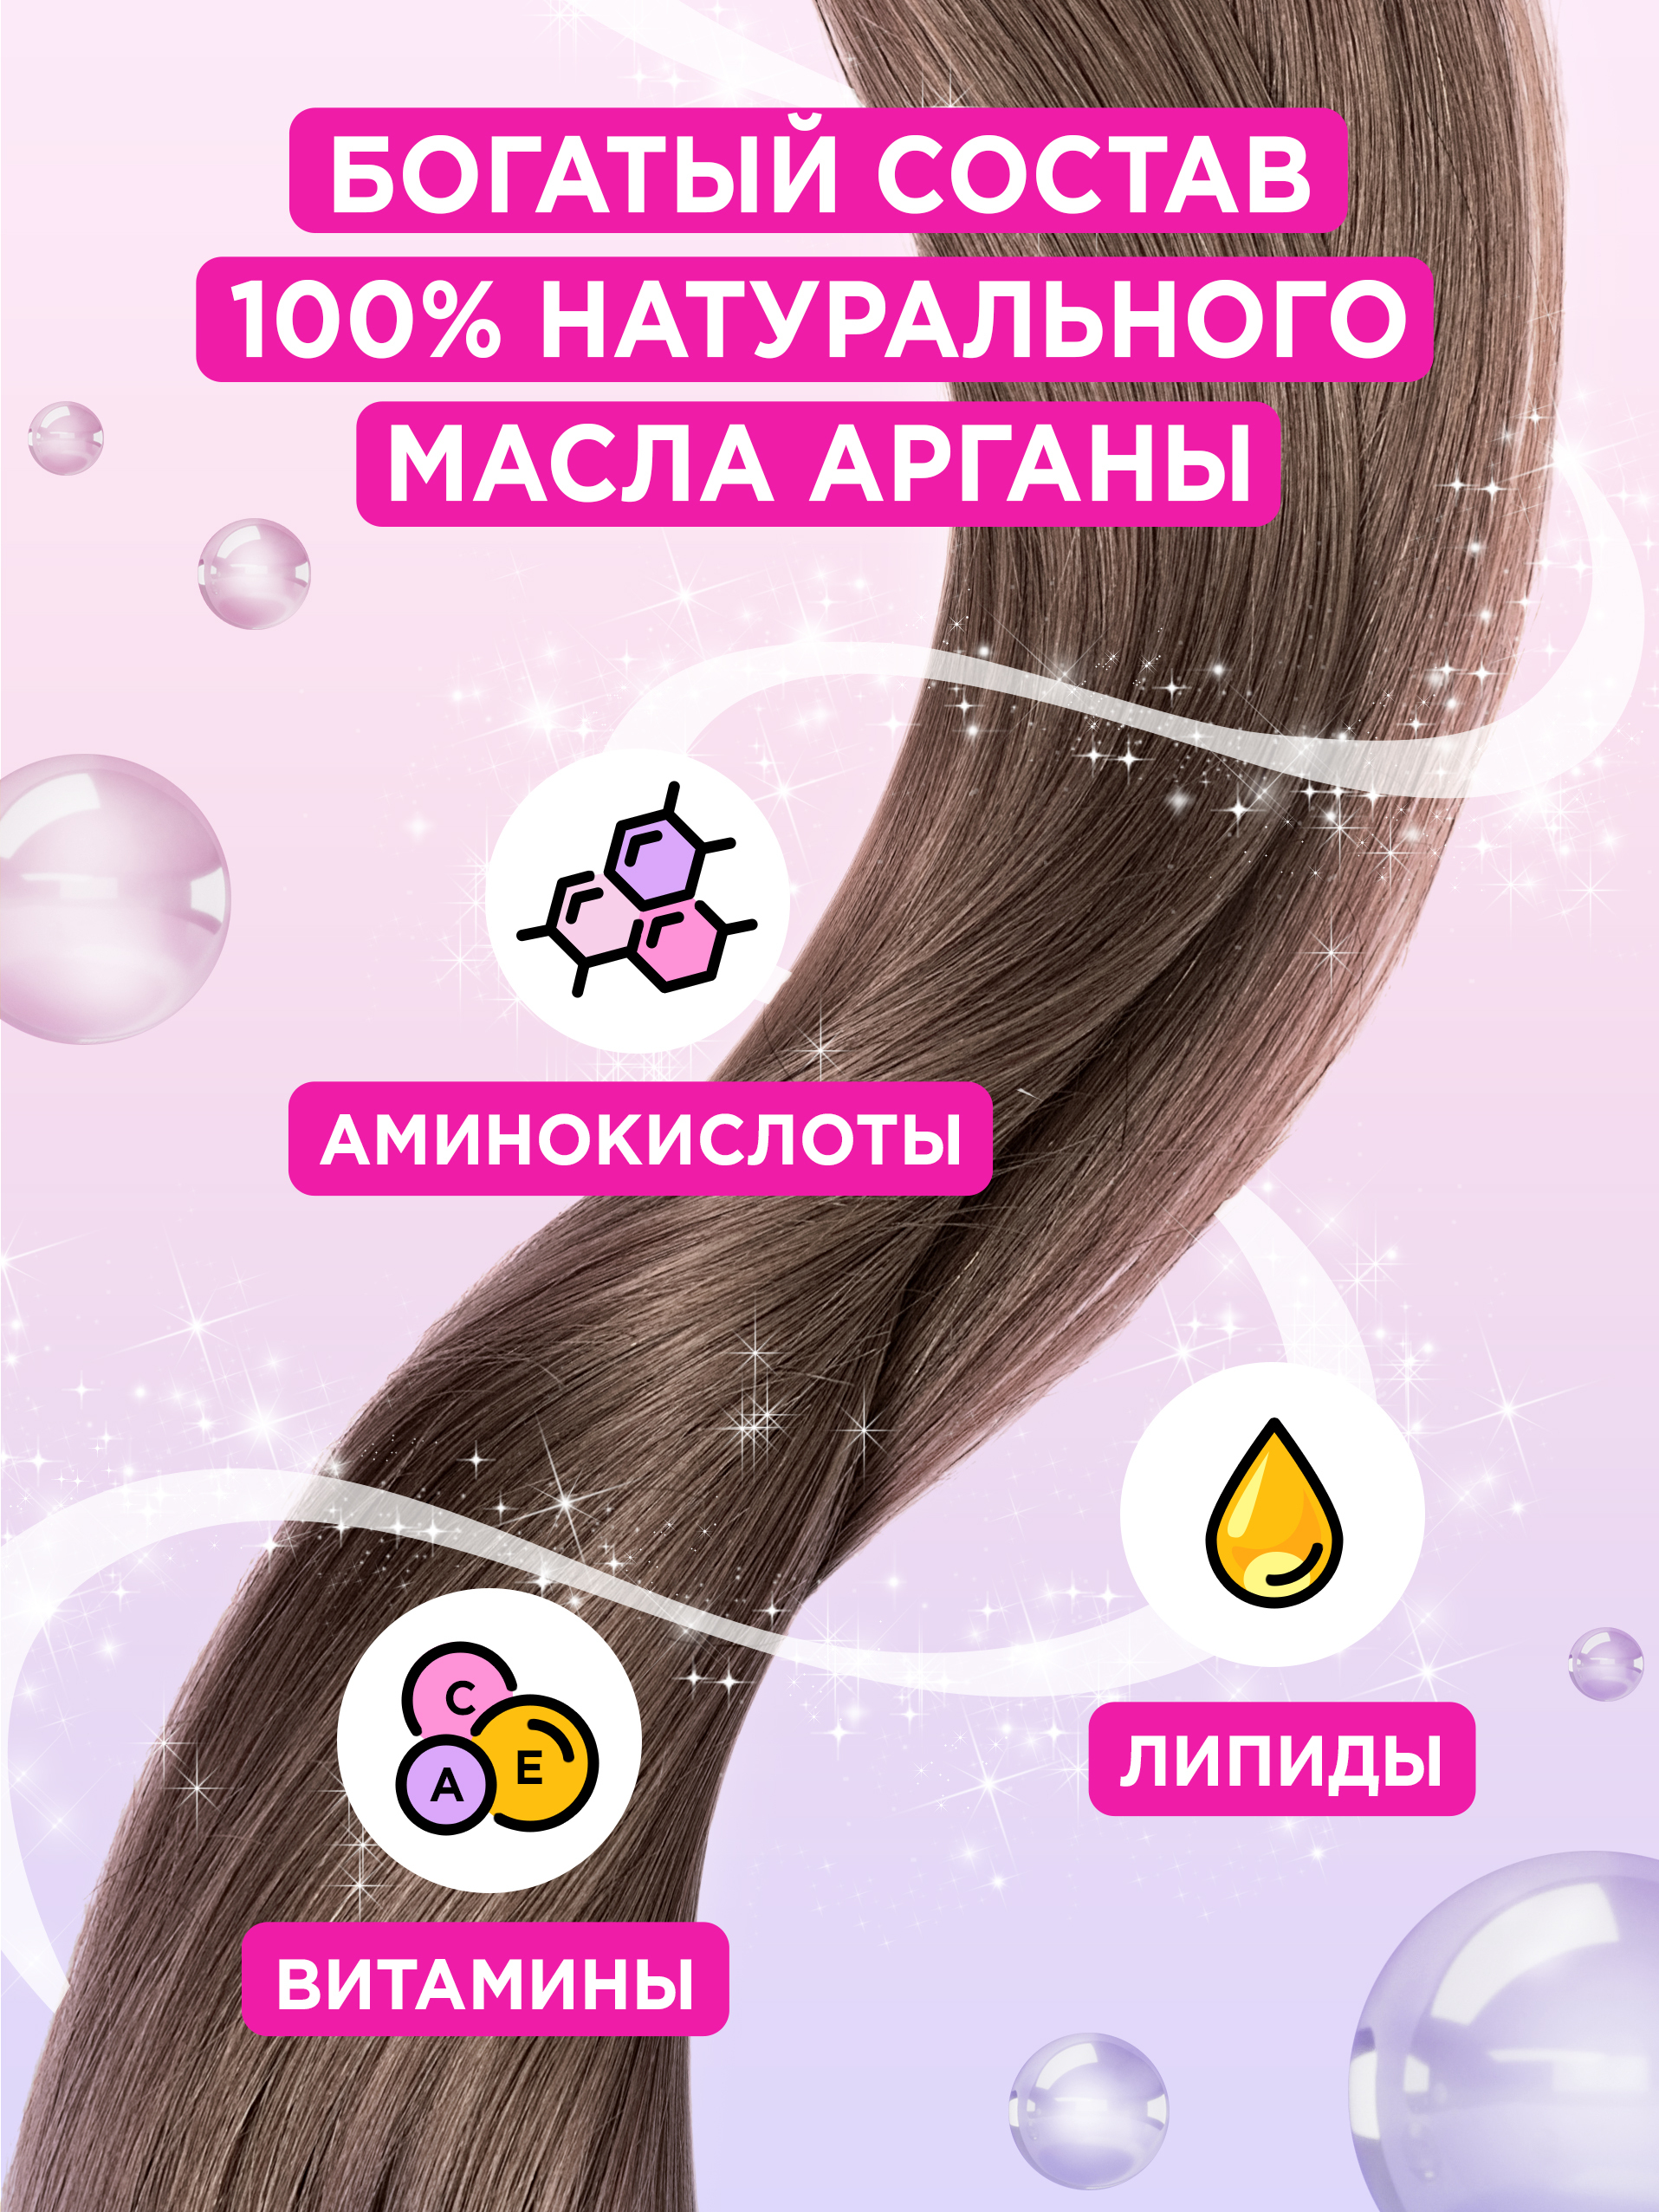 Маска для волос only4hair. Only 4 hair масло. Only hair масло. Эликсир арганы» от only4hair.